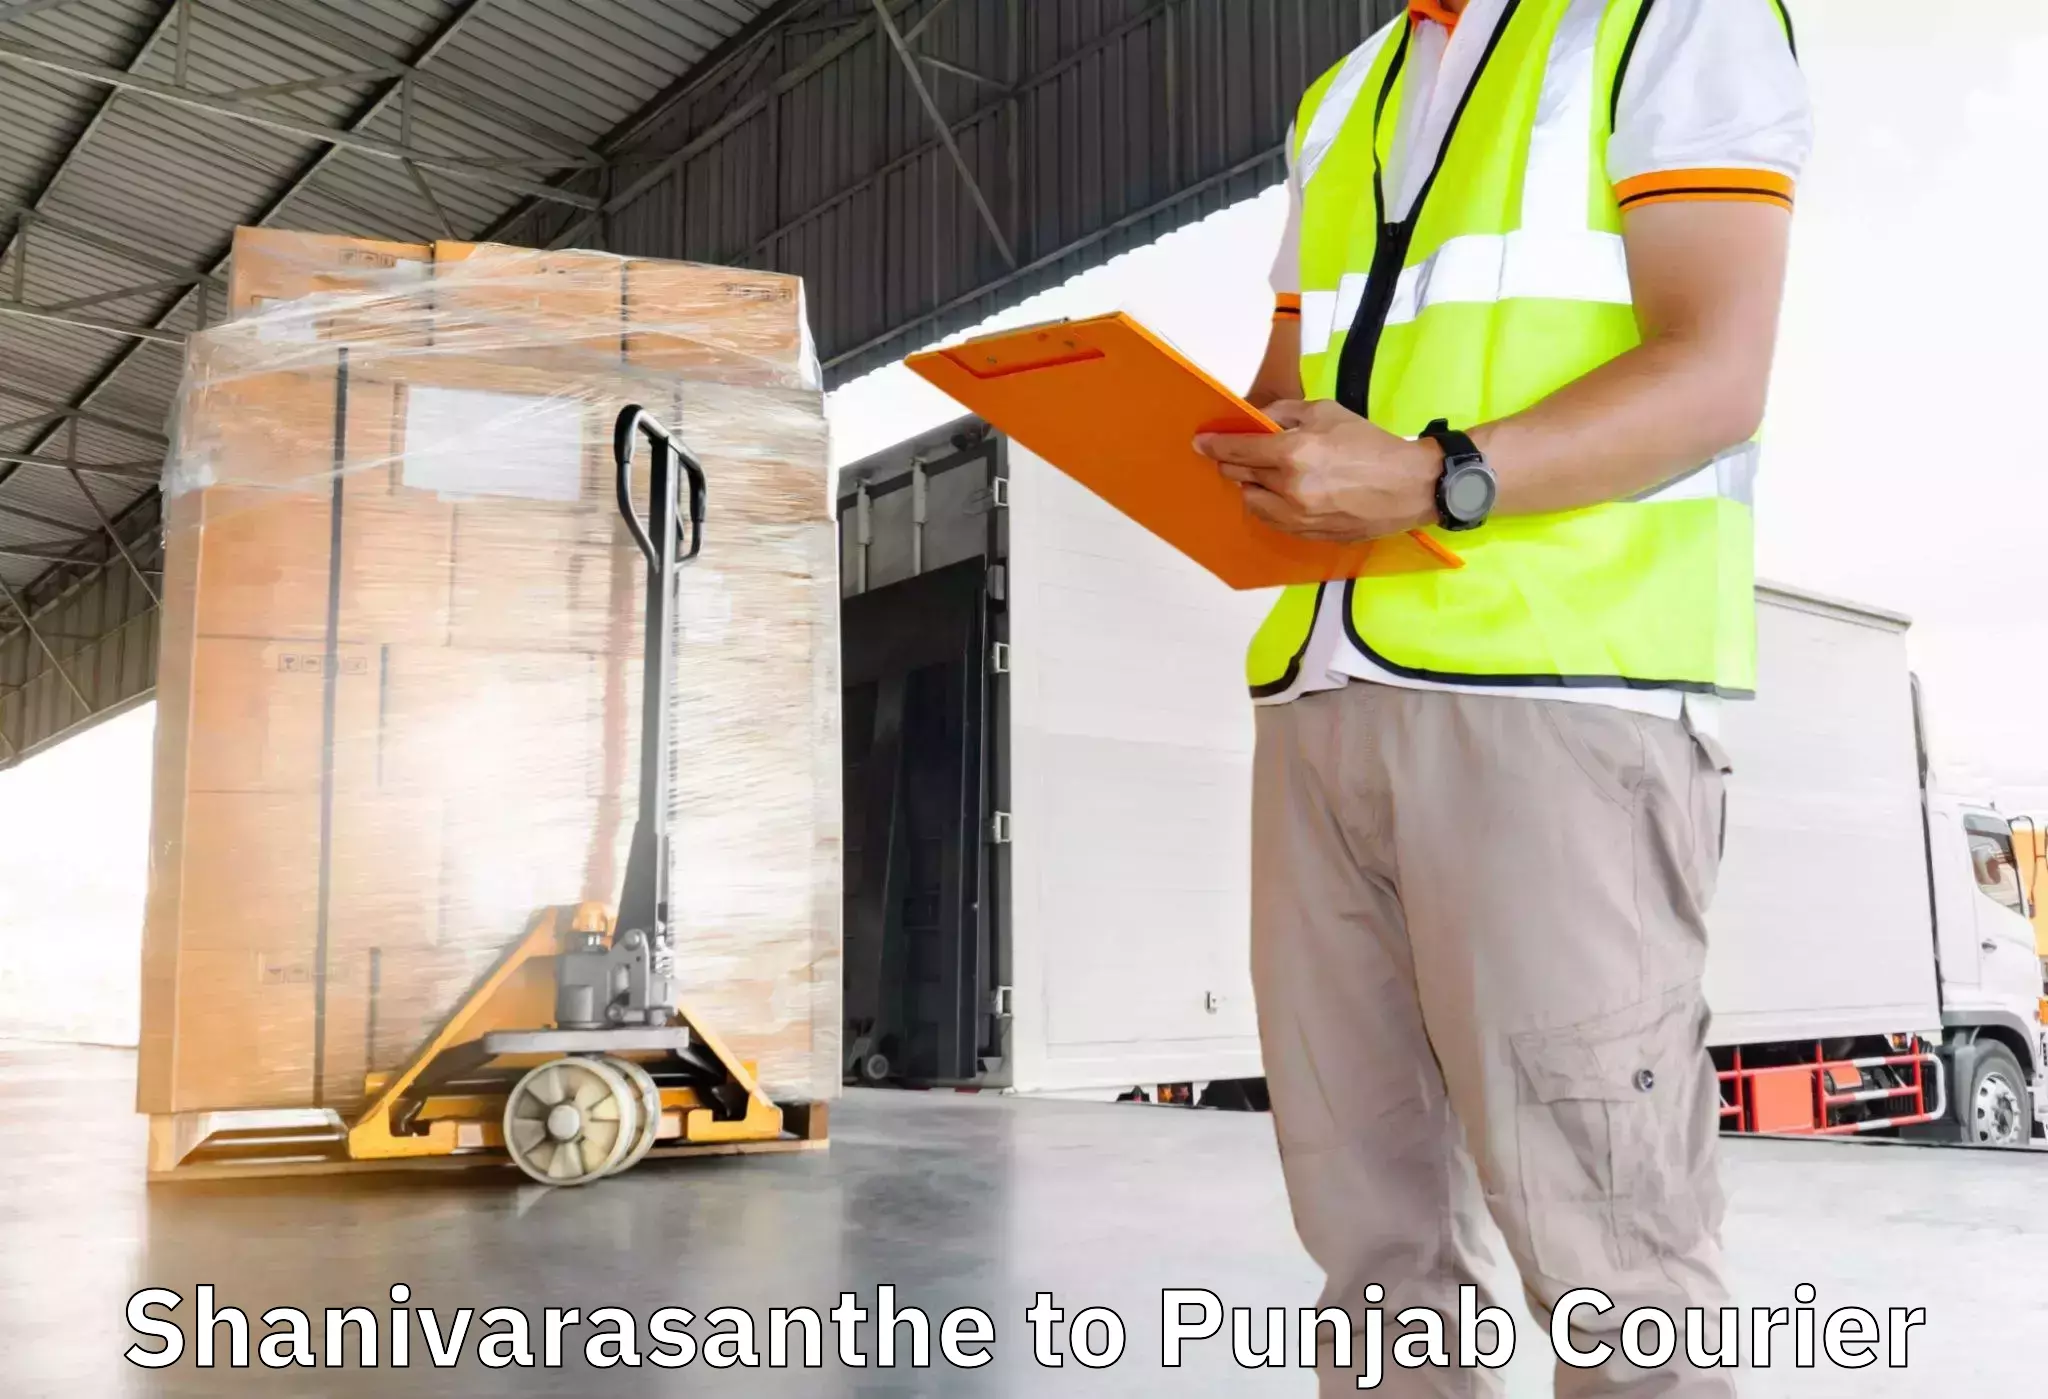 Furniture delivery service Shanivarasanthe to Jalalabad